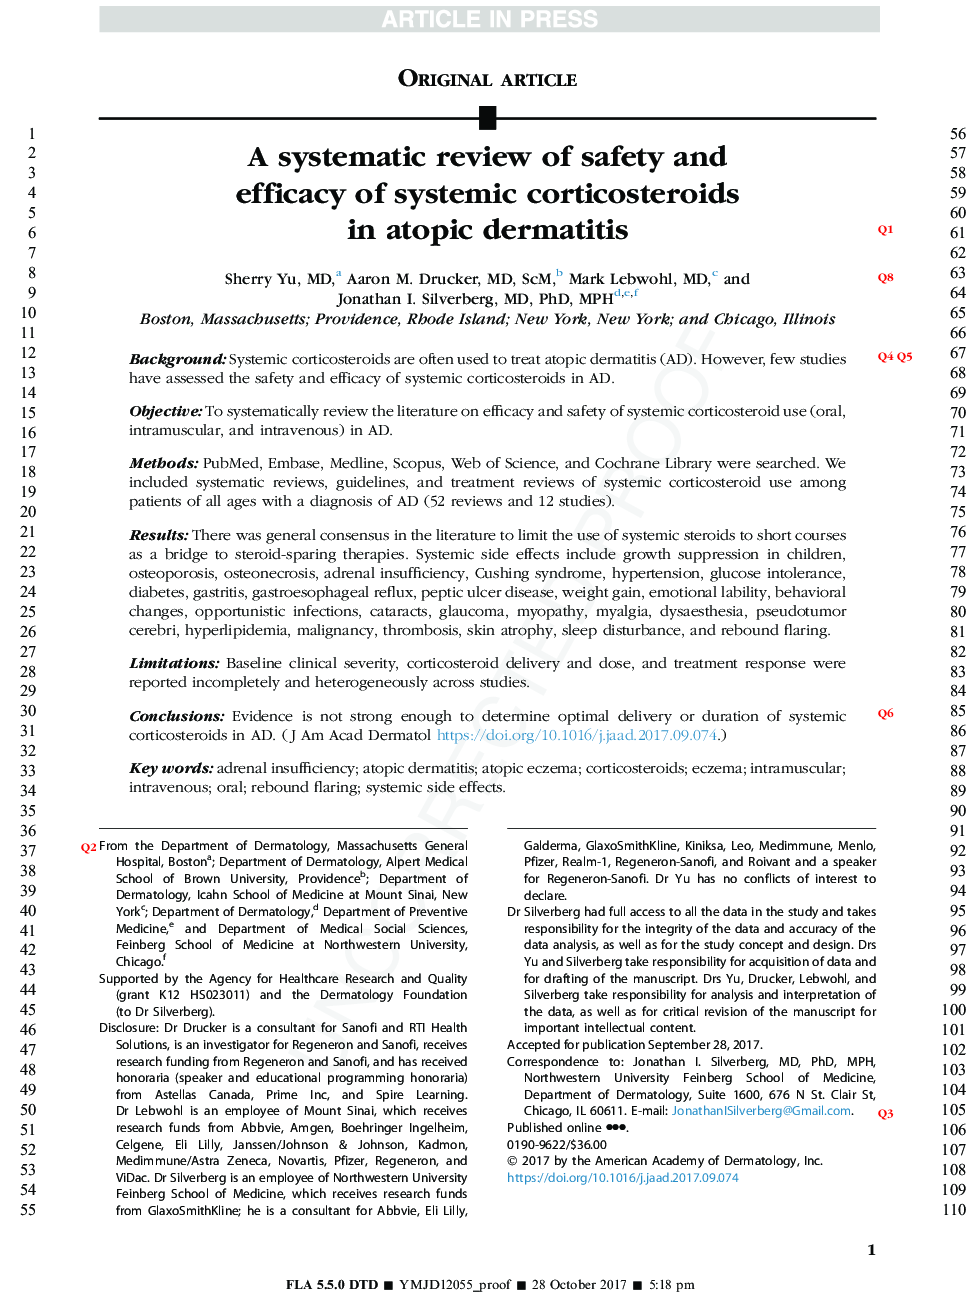 بررسی سیستماتیک ایمنی و کارآیی کورتیکواستروئیدهای سیستمیک درماتیت آتوپیک 